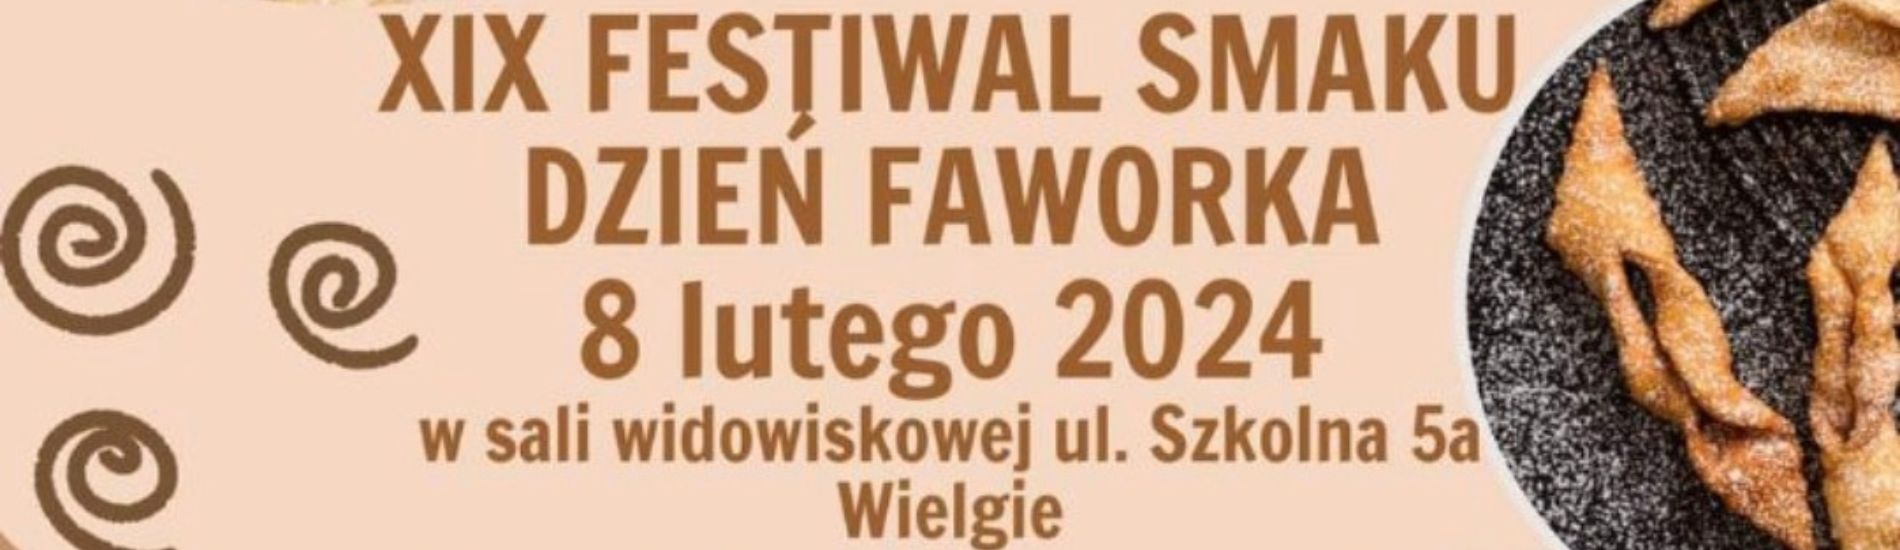 Wspieramy tegoroczny XIX Festiwal Smaku Dzień Faworka